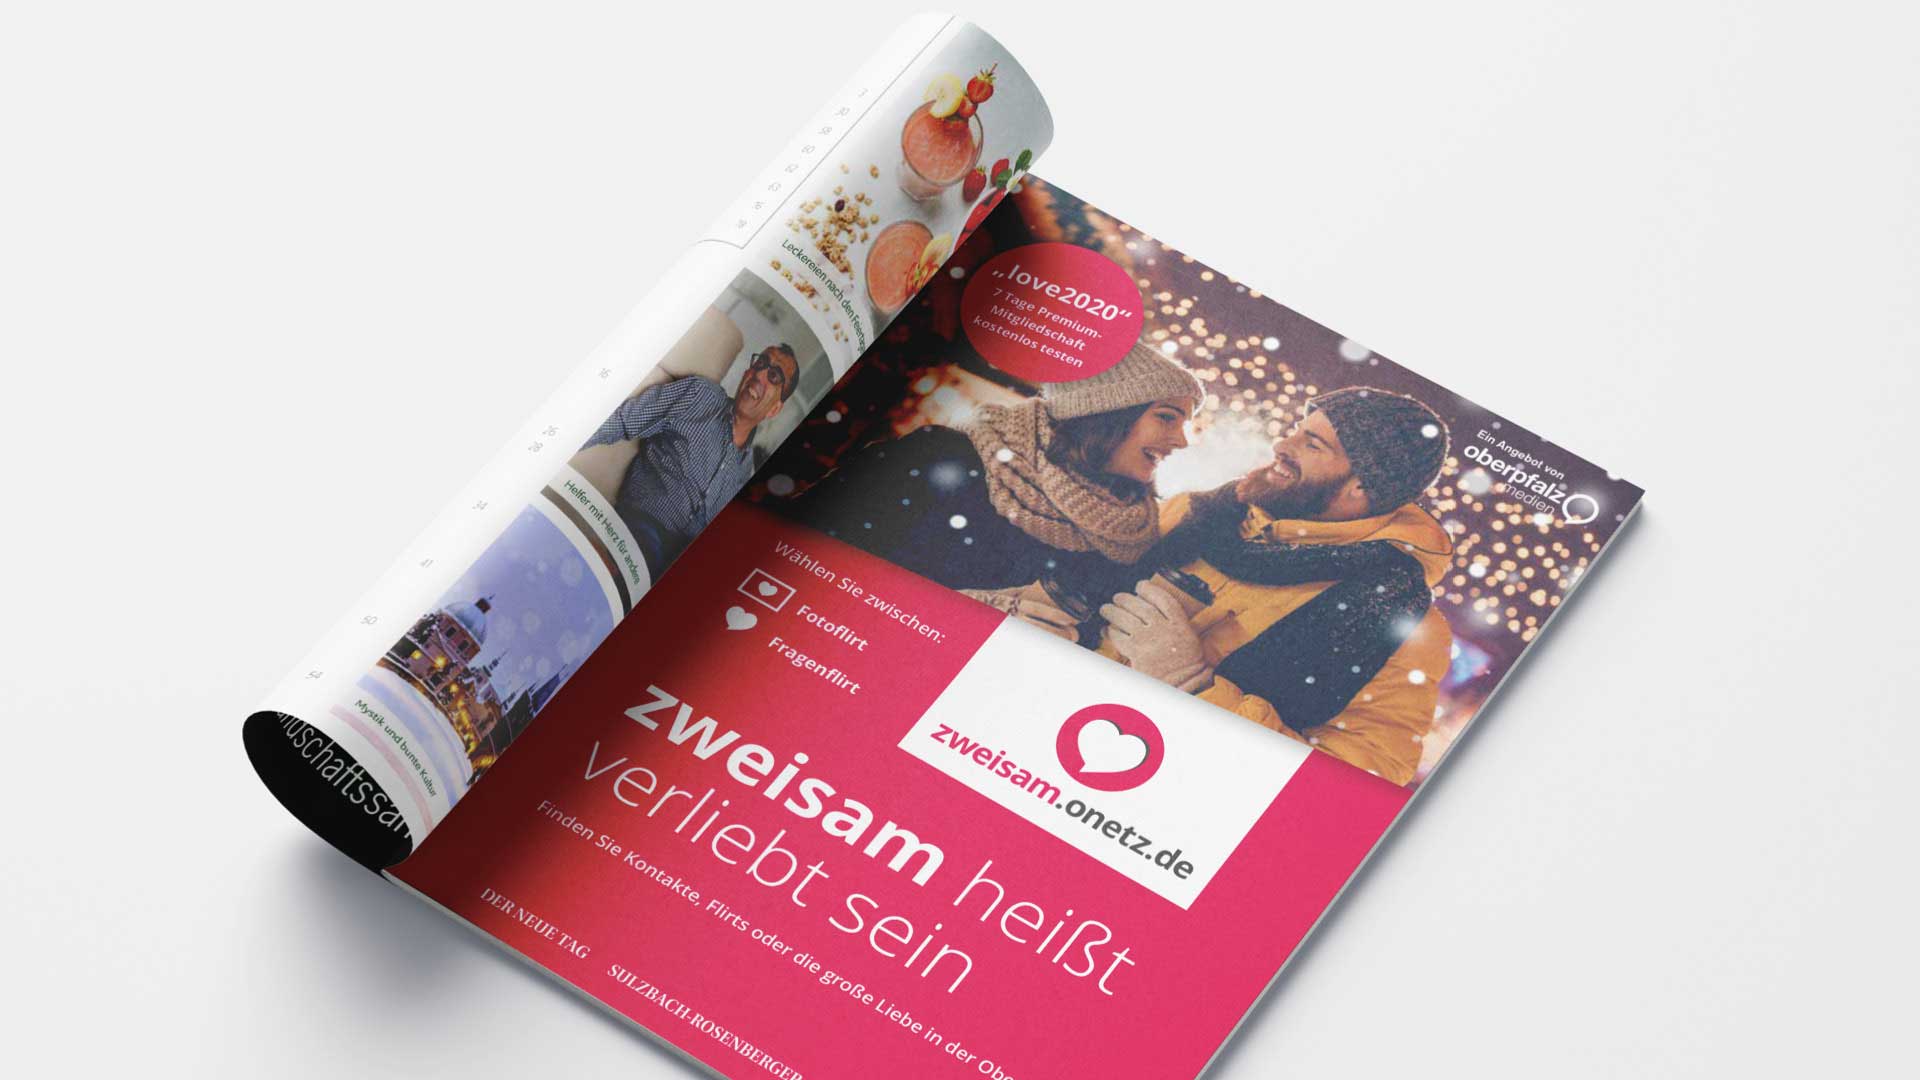 Anzeige des Onlineportals „zweisam.onetz.de“ in einem Magazin von Oberpfalz Medien.